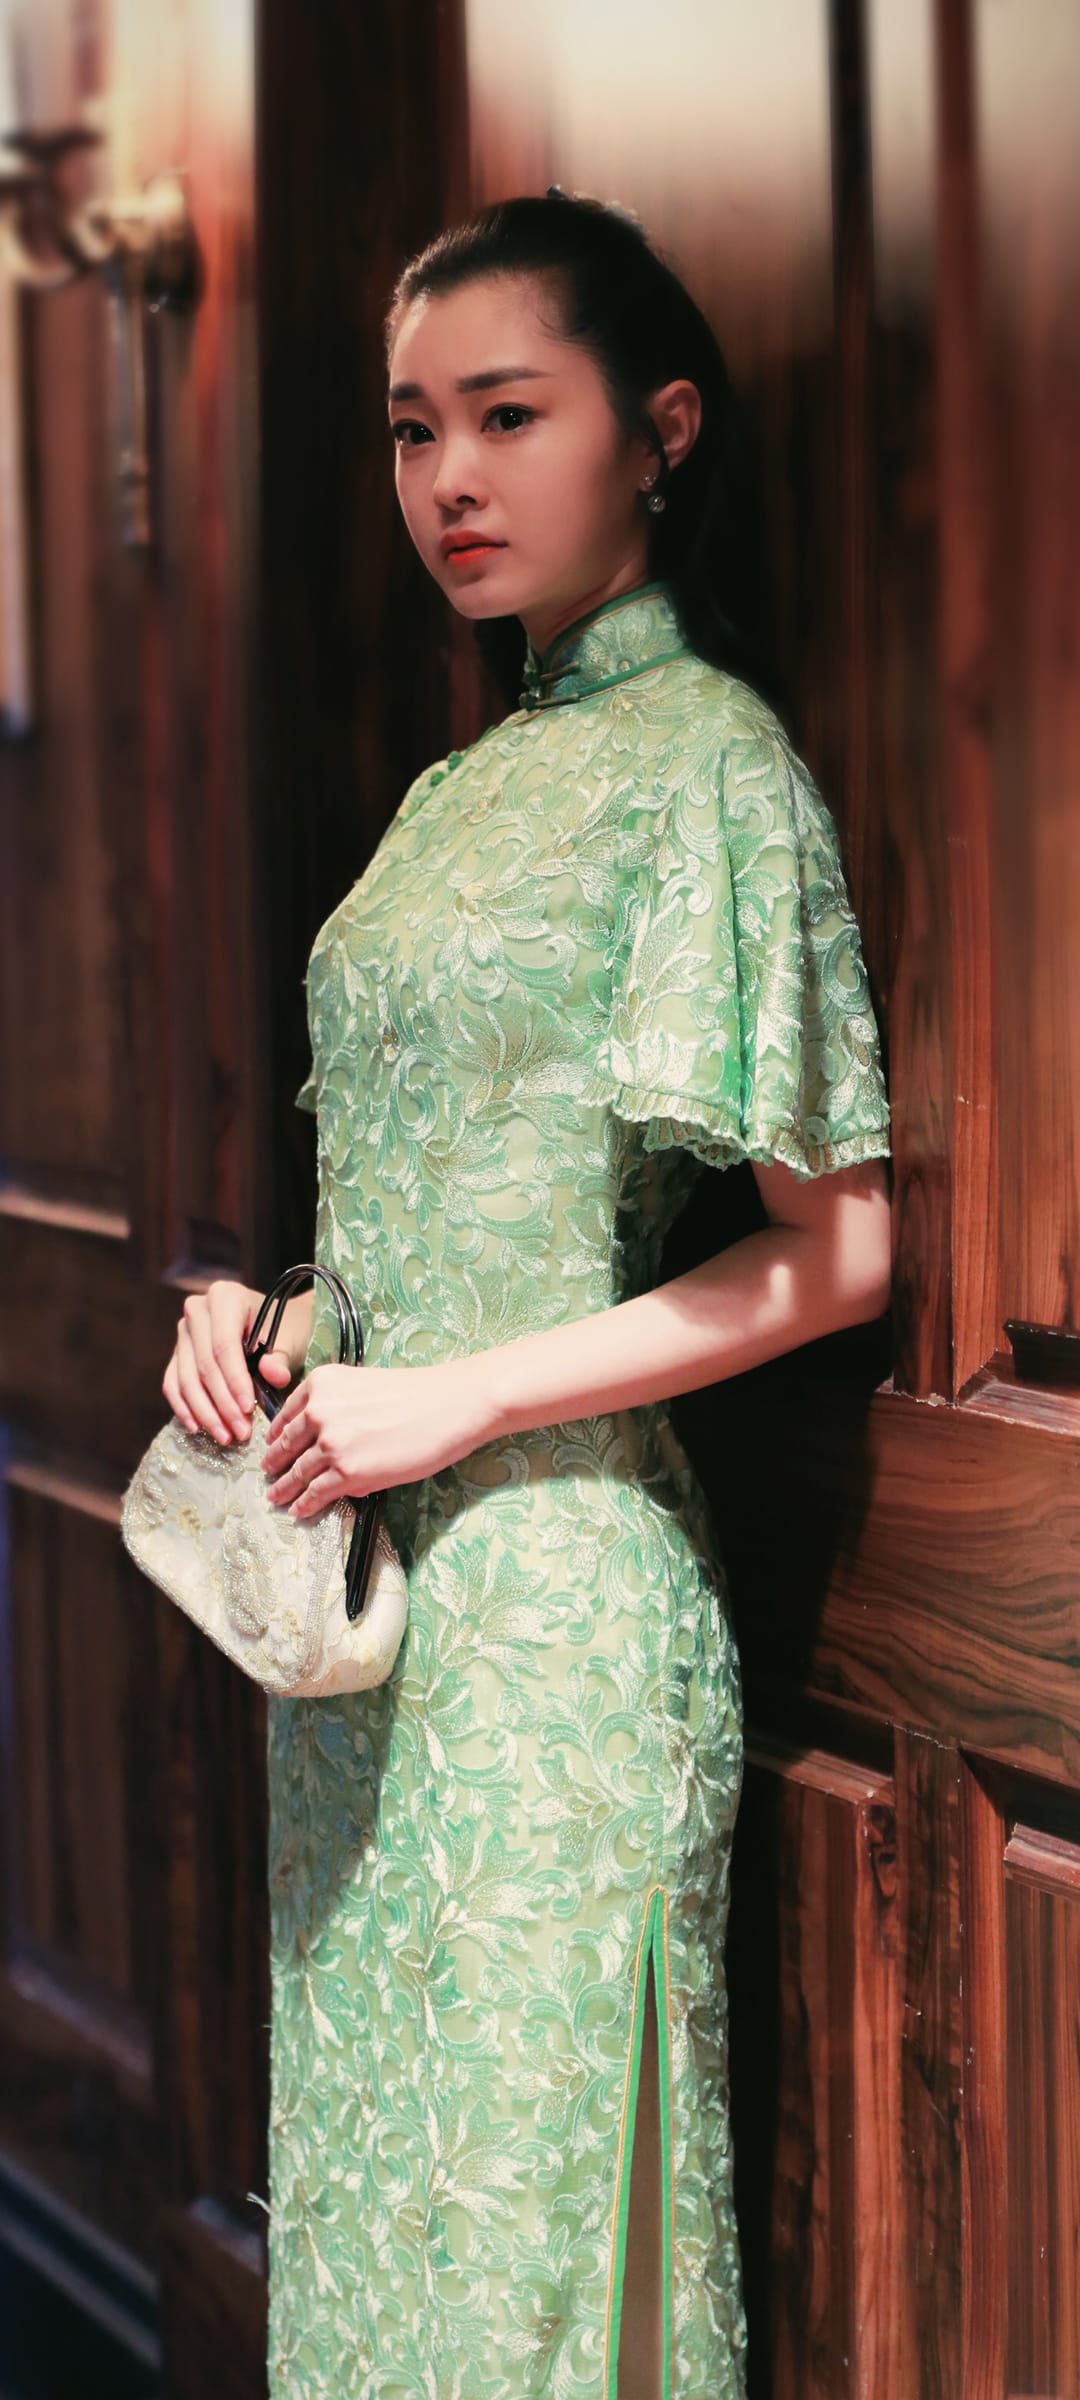 宋轶身穿绿色旗袍古典风格高清手机壁纸